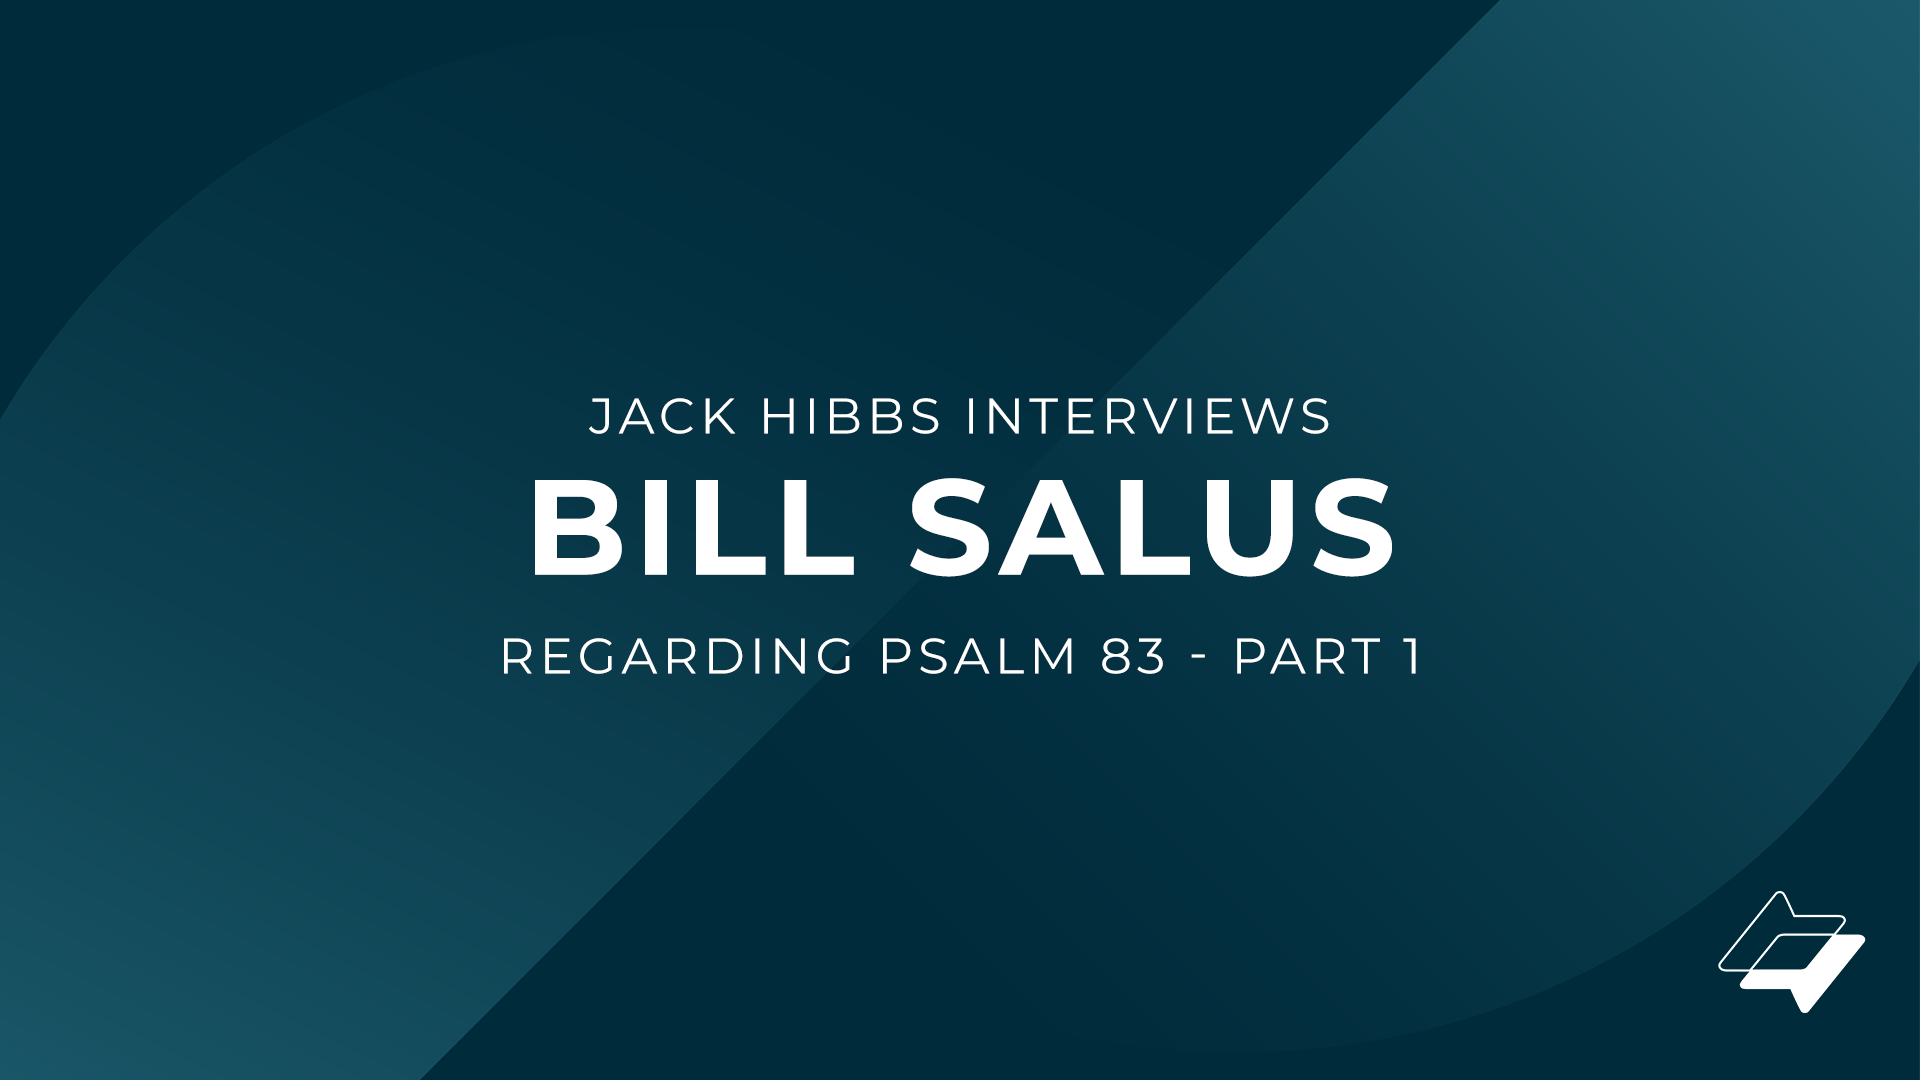 Jack Hibbs interviews Bill Salus regarding Psalm 83 – Part 1